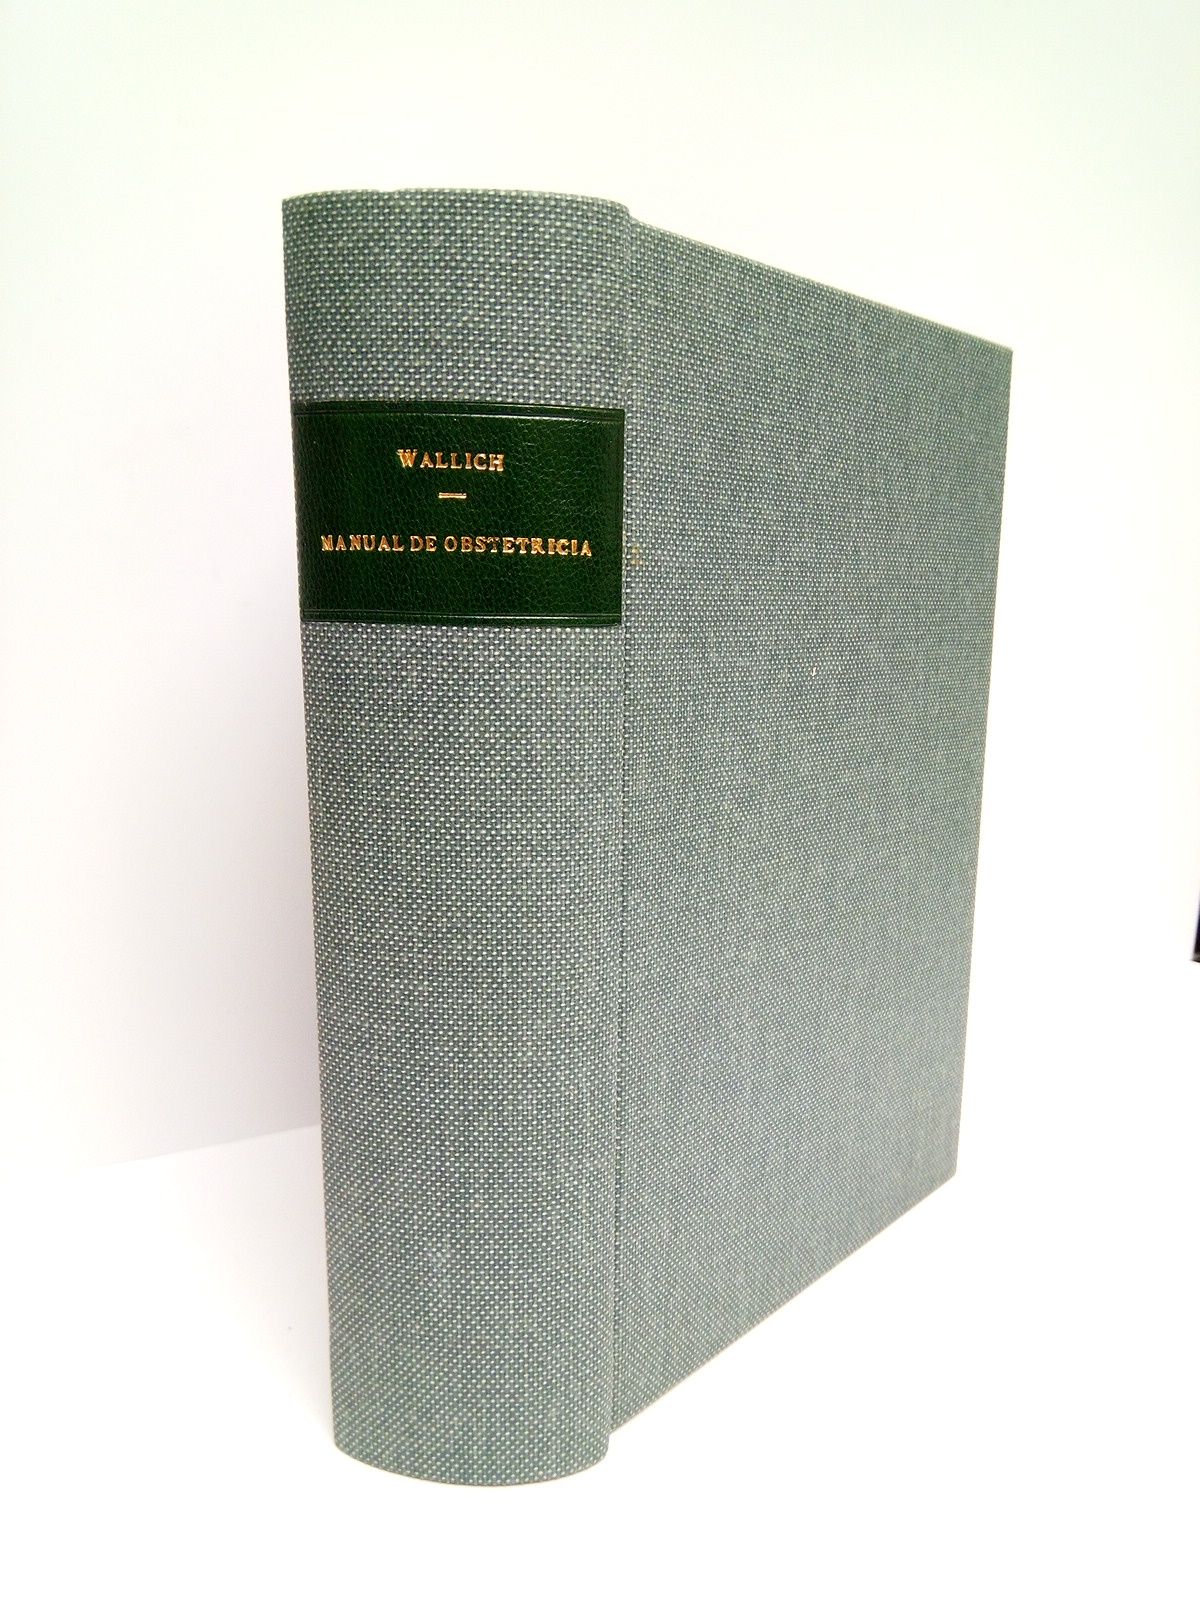 WALLICH, V.  y Ed. Lvy-Solal - Manual de obstetricia /  Traduccin de M. Montaner de la Poza y M. Montaner Toutain, de la 5 Ed. francesa